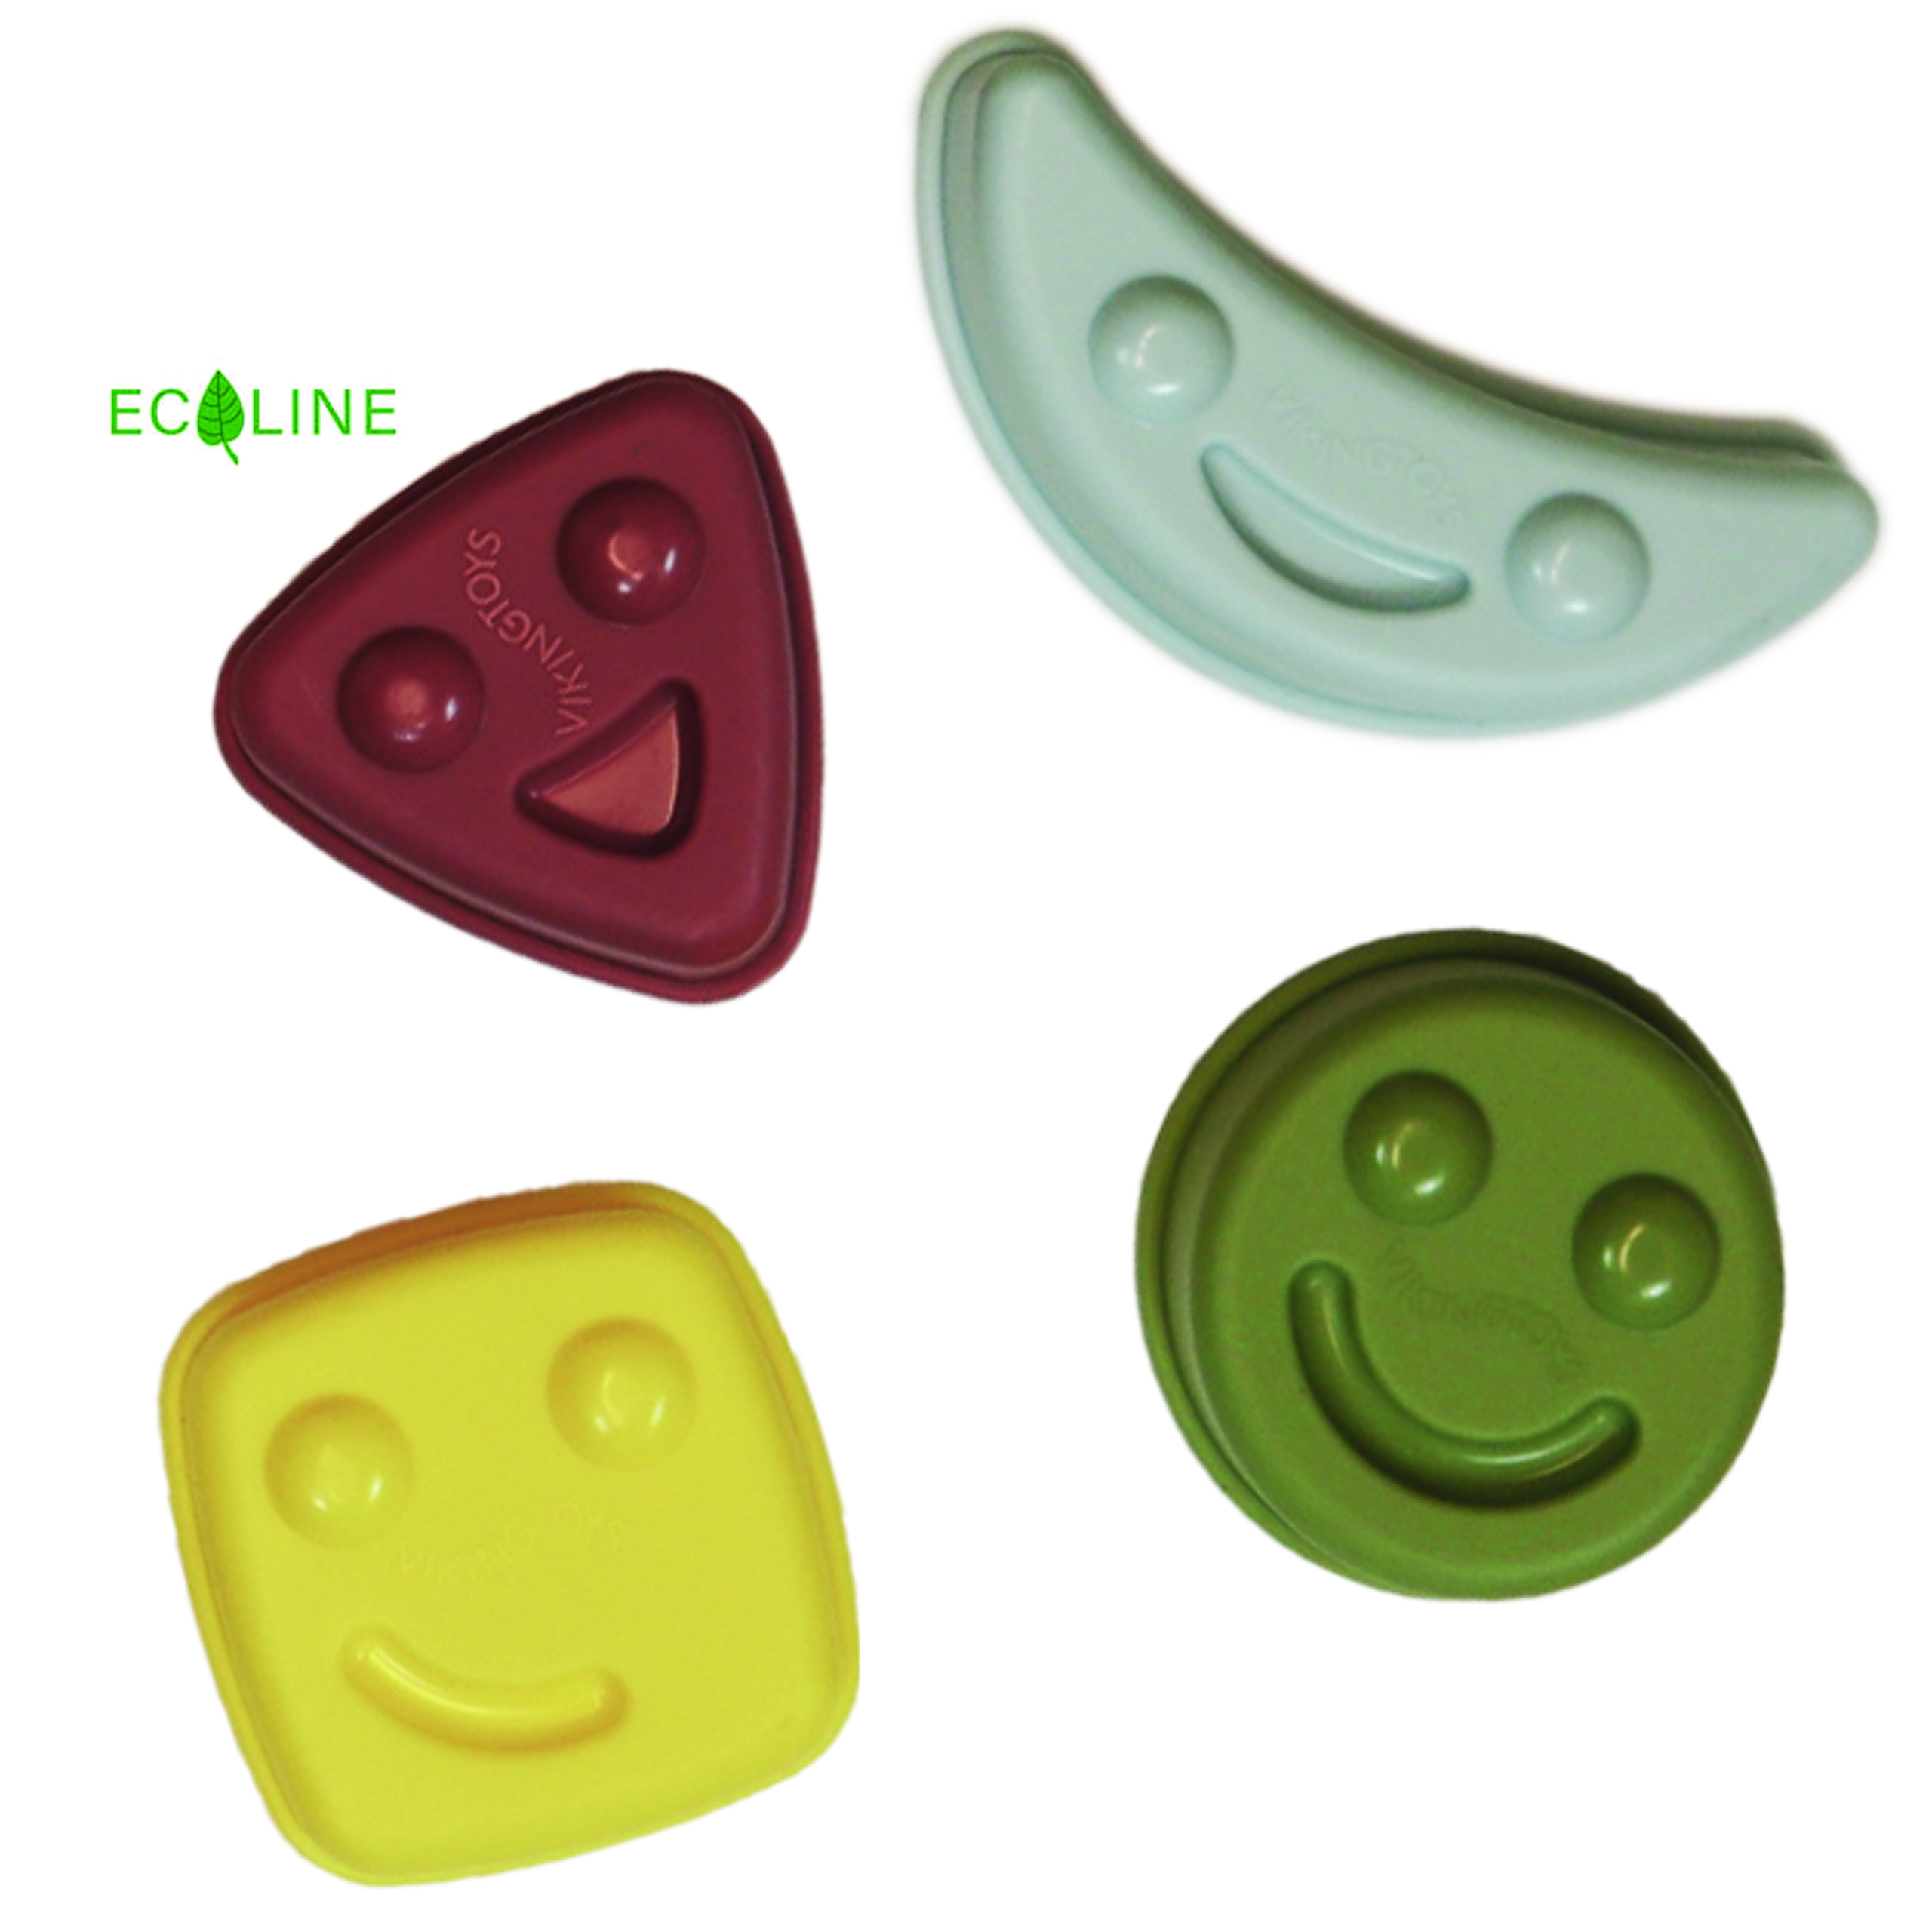 Ecoline Sandformar Happy Faces